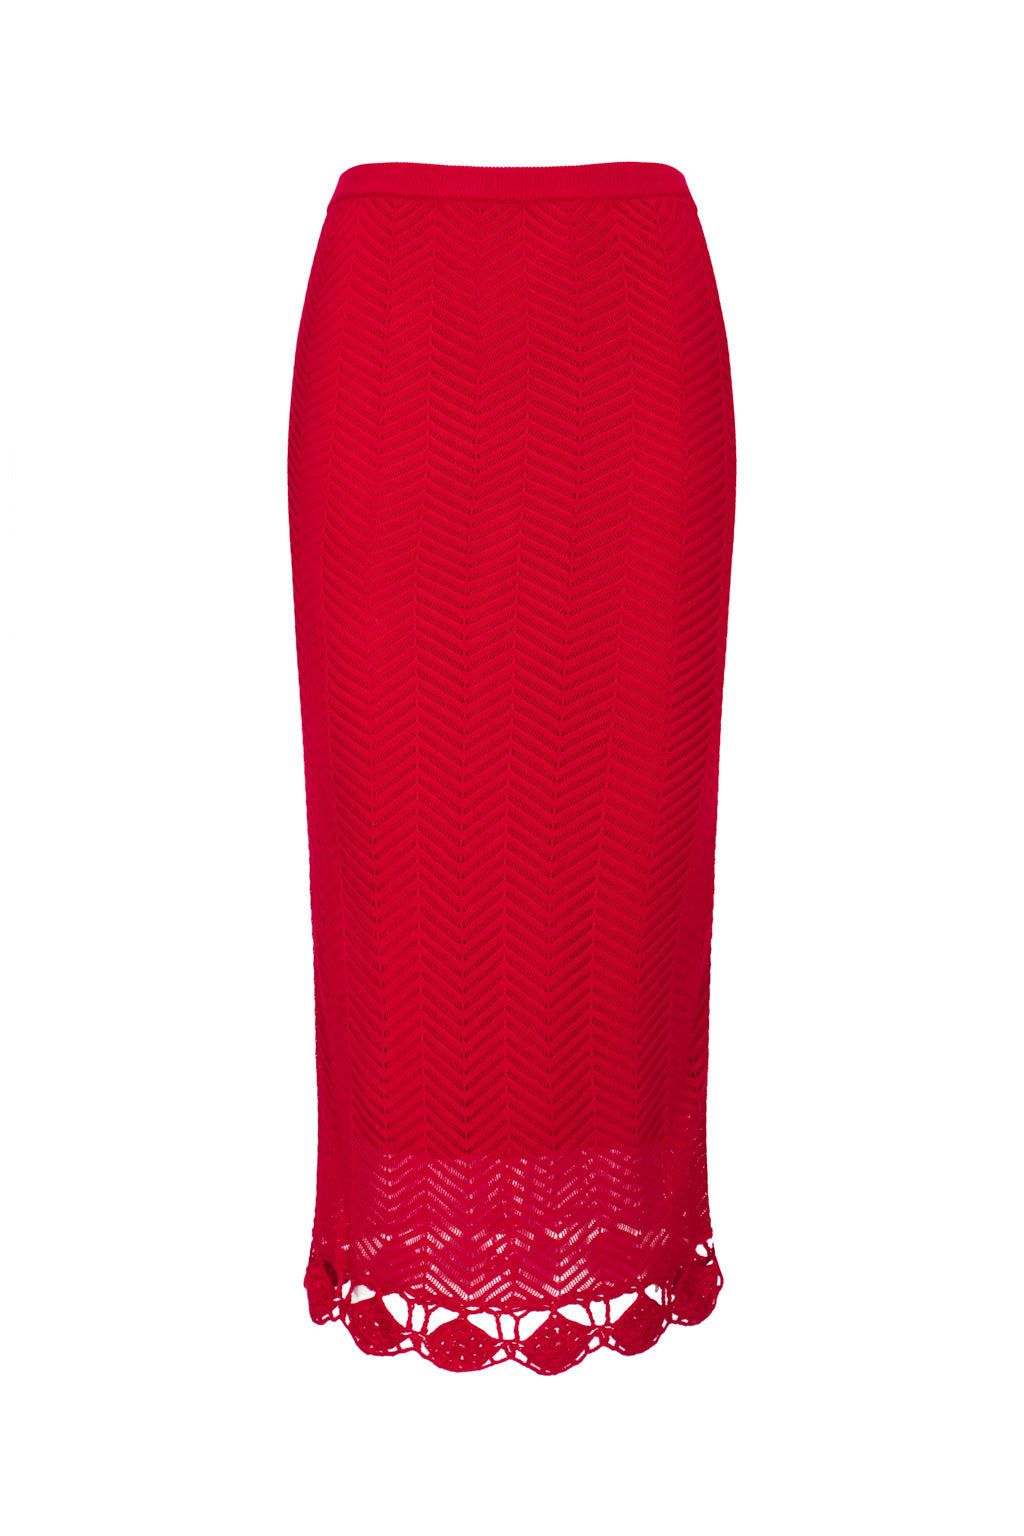 鈎編針織裙 - 紅色